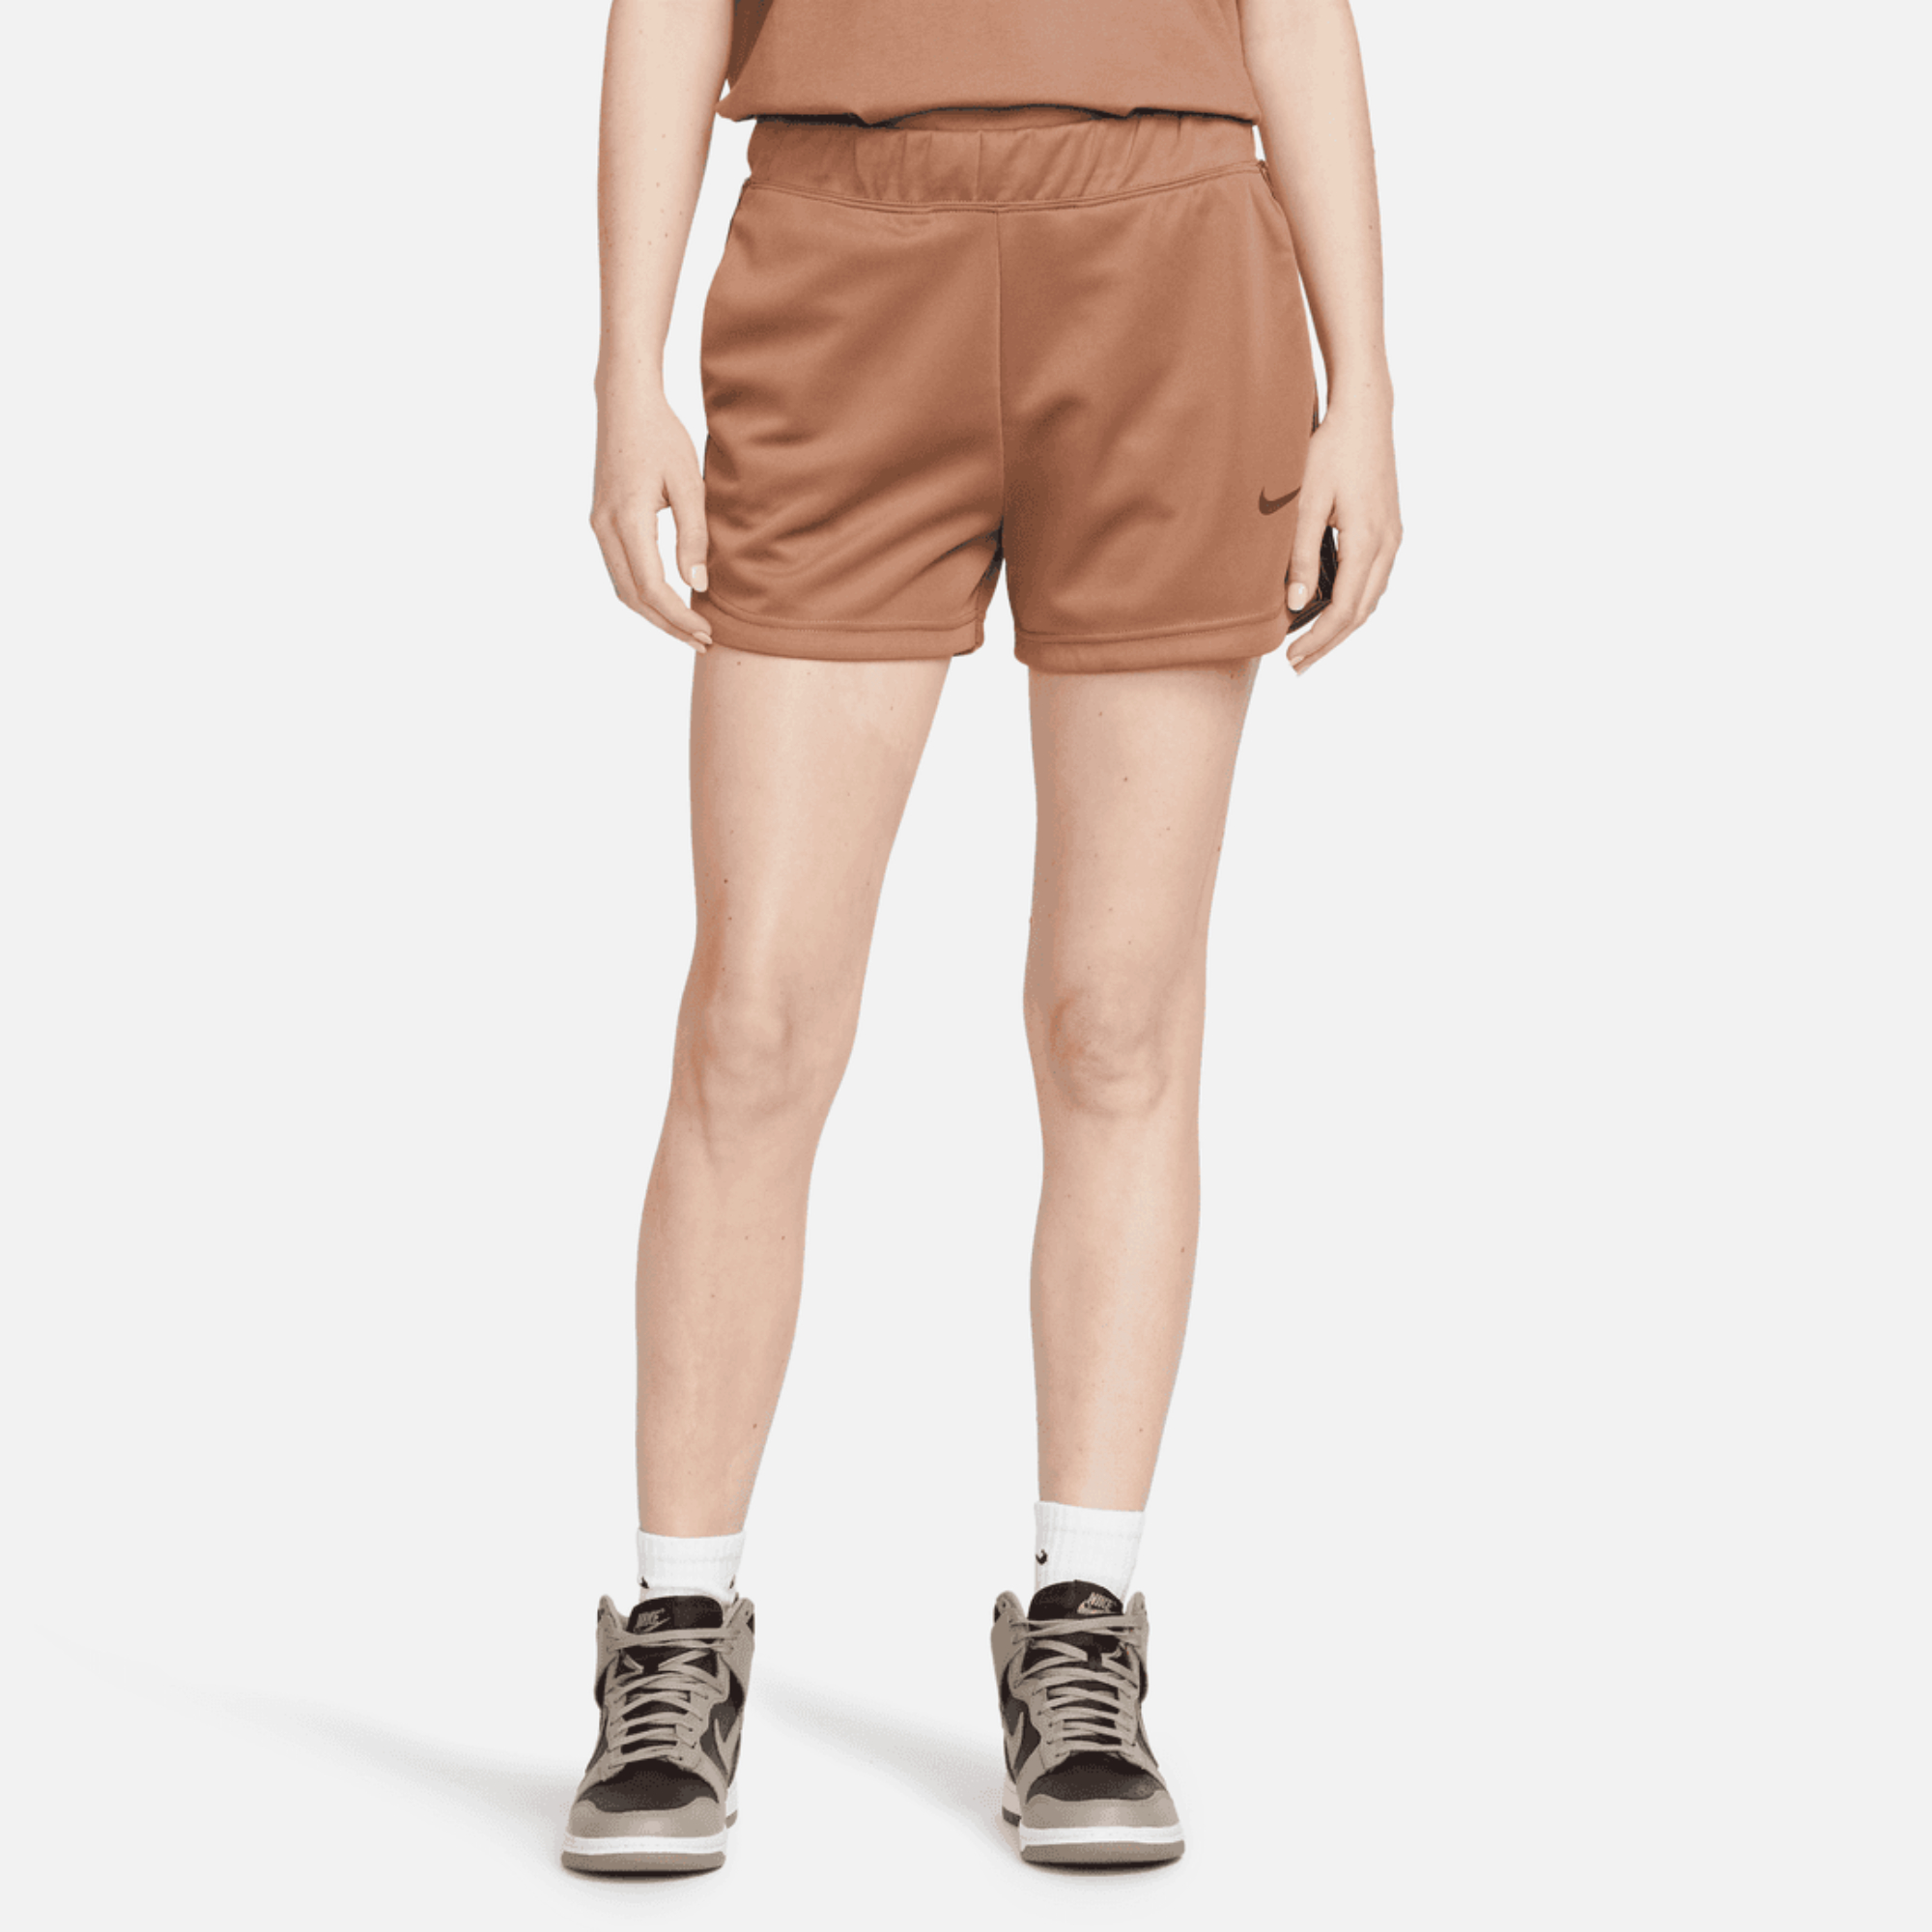 Cпортивные шорты женские Nike Nsw Pk Tape Short DM4648-256 коричневые XS